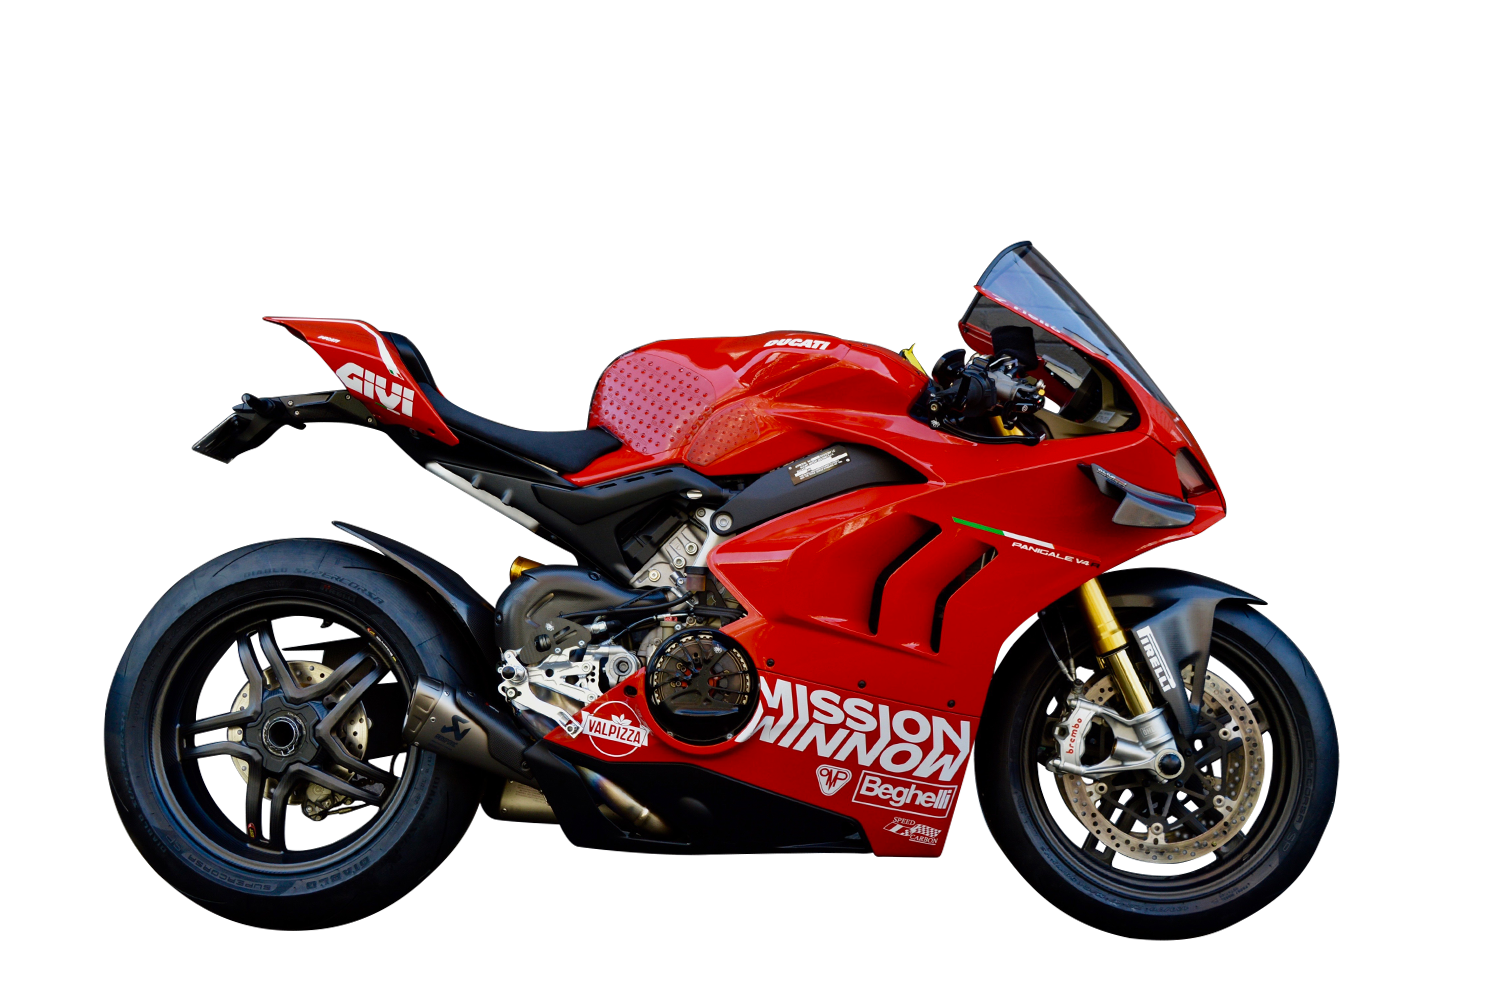 Ducati Panigale V4 S 2020 ganha asas da MotoGP; preço sobe a R